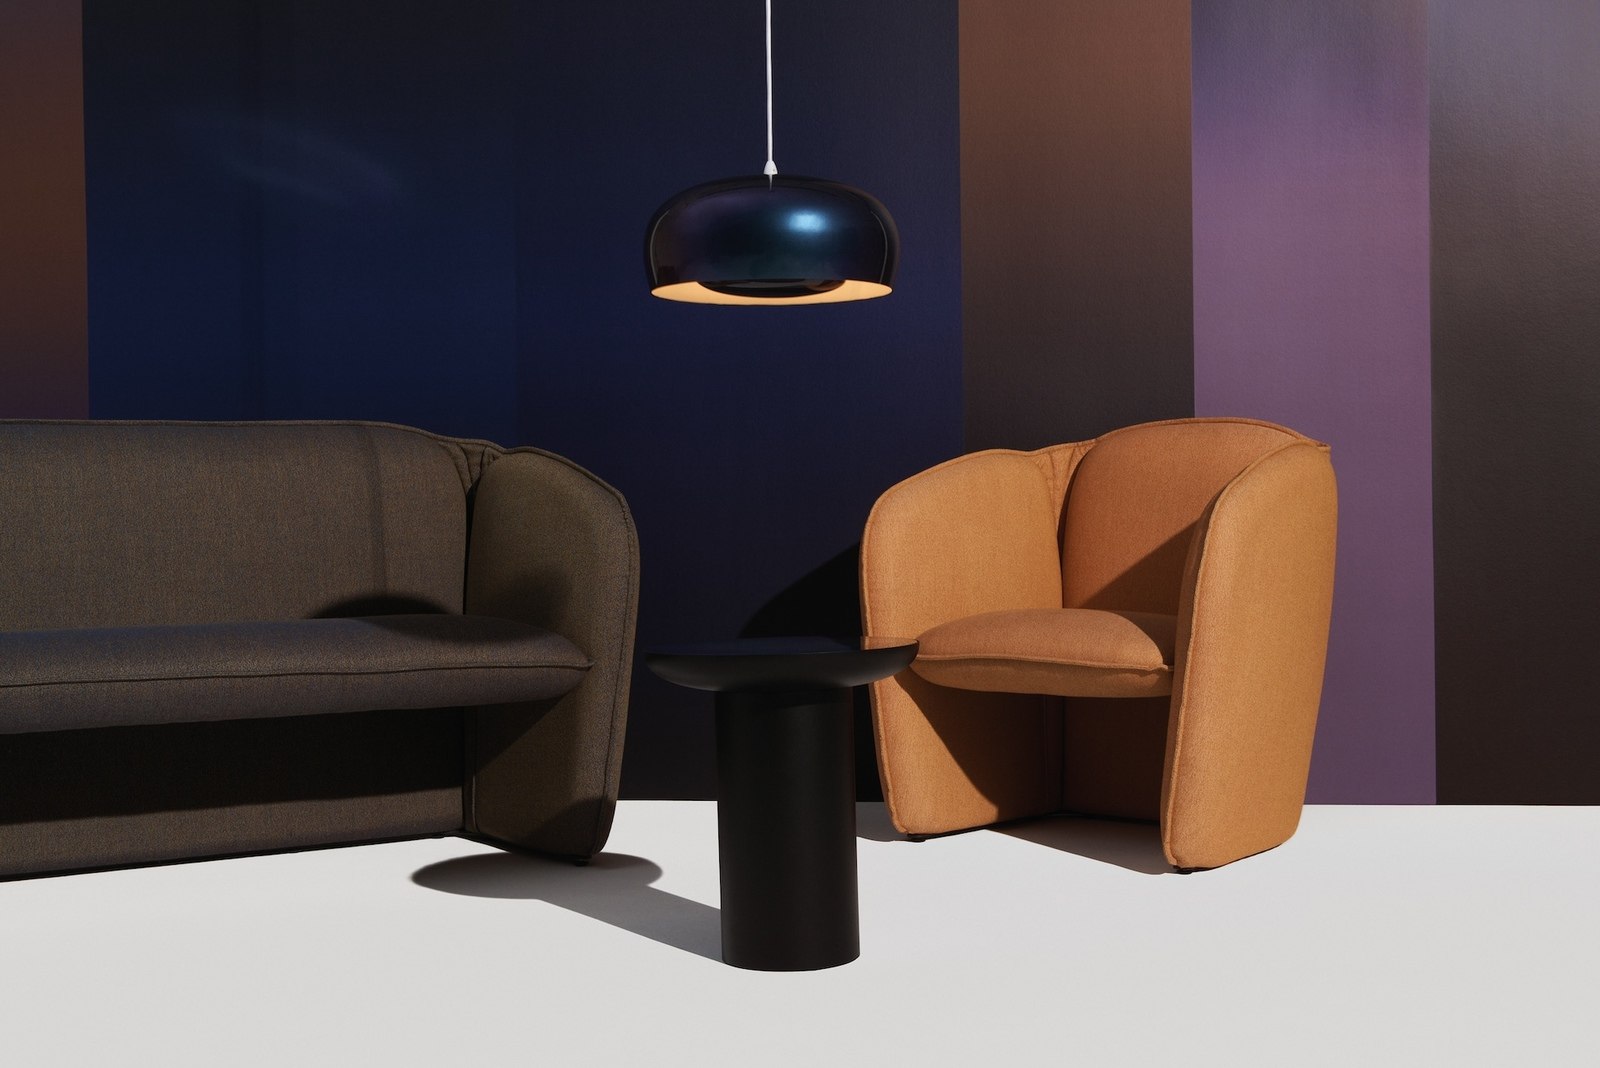 Schwarze Leuchte über einer Sitzgruppe mit Sofa, Sessel und Beistelltisch